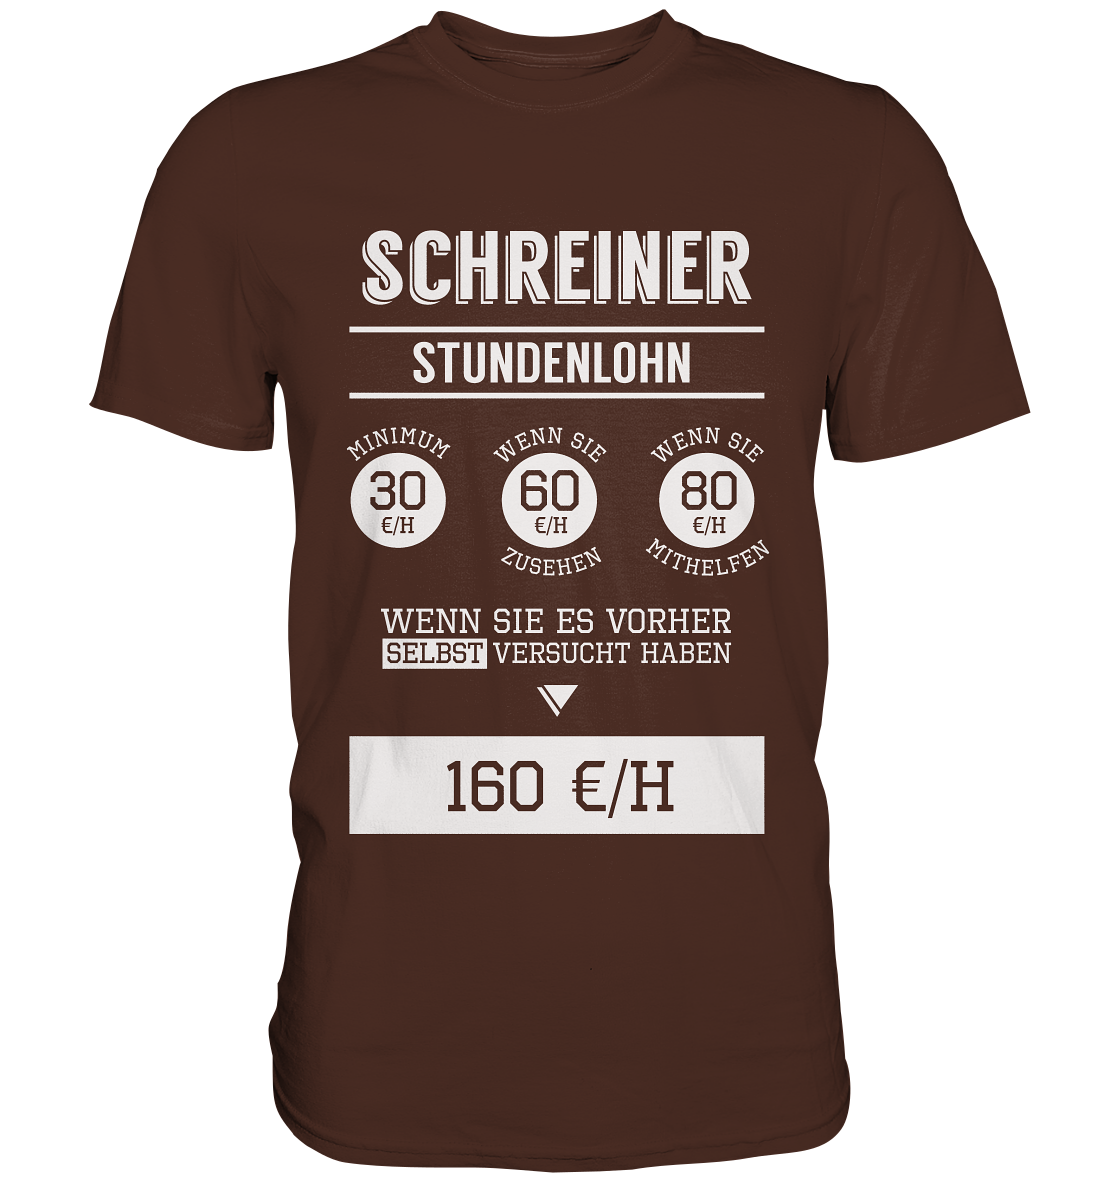 Schreiner Stundenlohn / Druck weiß / Männer Premium Shirt - Baufun Shop